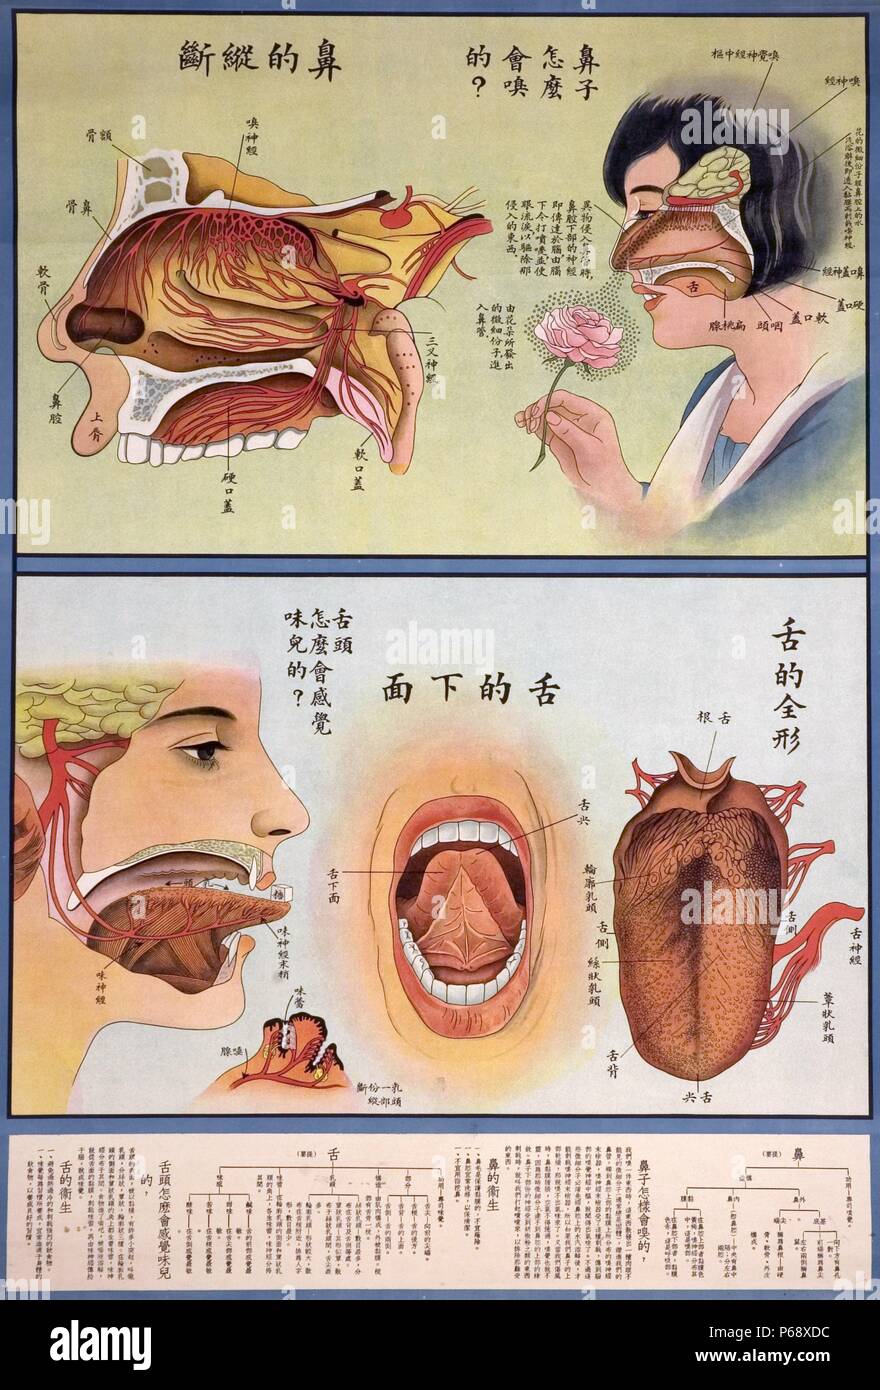 Un medico cinese poster, che mostra le immagini dettagliate della parte anatomica del naso e l'anatomia della linguetta. Entrambi sono complementate con il testo che spiega le strutture di entrambi spaccato di disegni. Datata c1920 Foto Stock